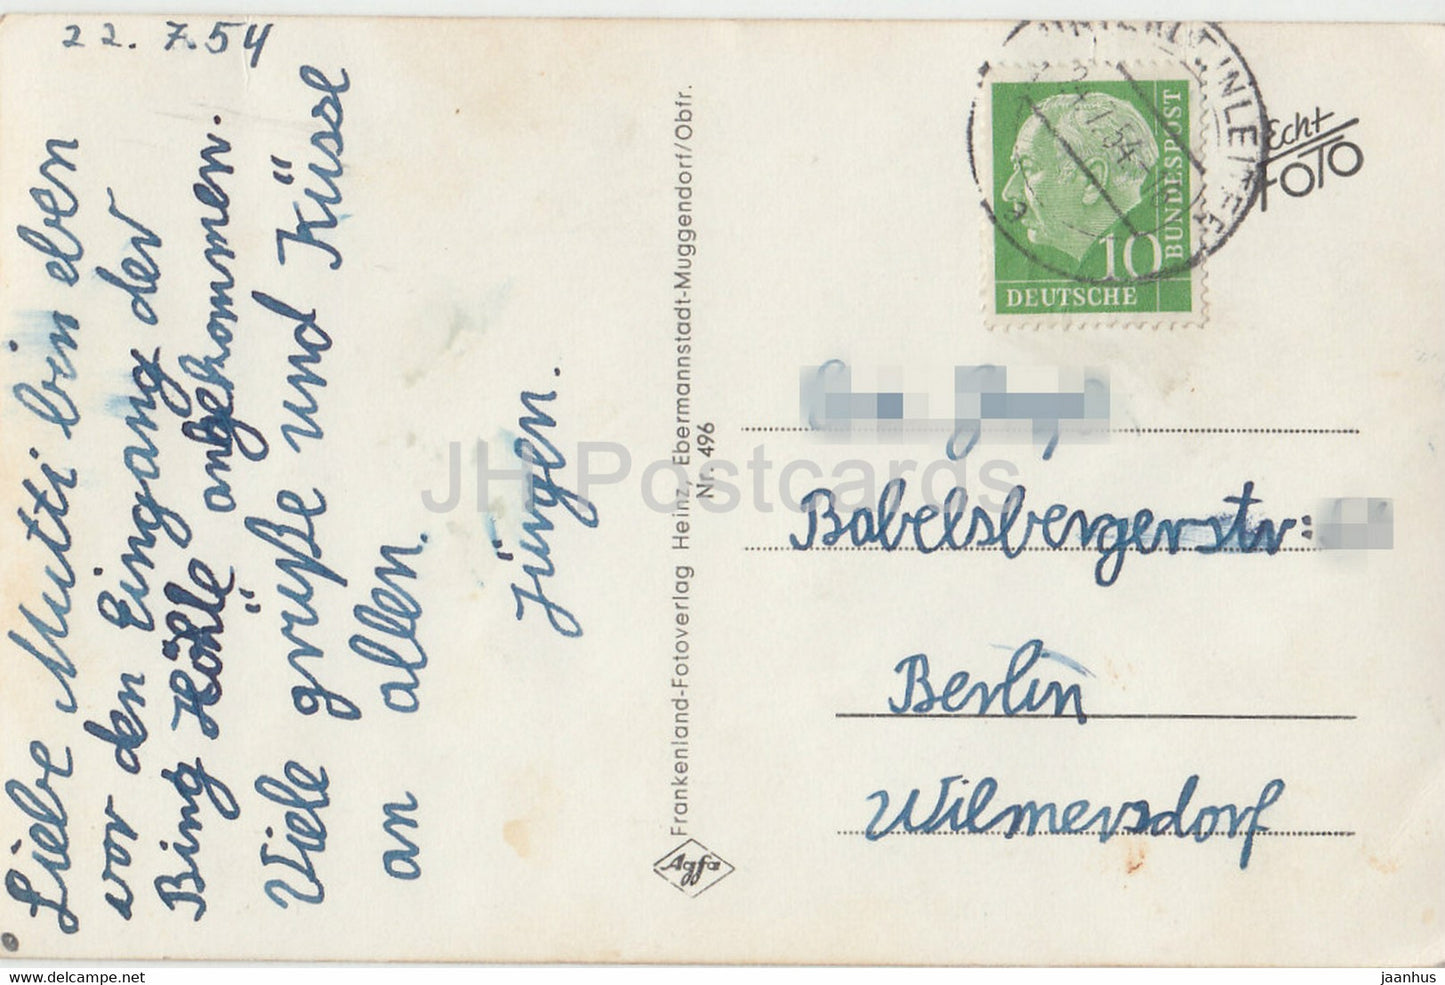 Bing Hohle - Streitberg - Venusgrotte - grotte - 496 - carte postale ancienne - 1954 - Allemagne - utilisé